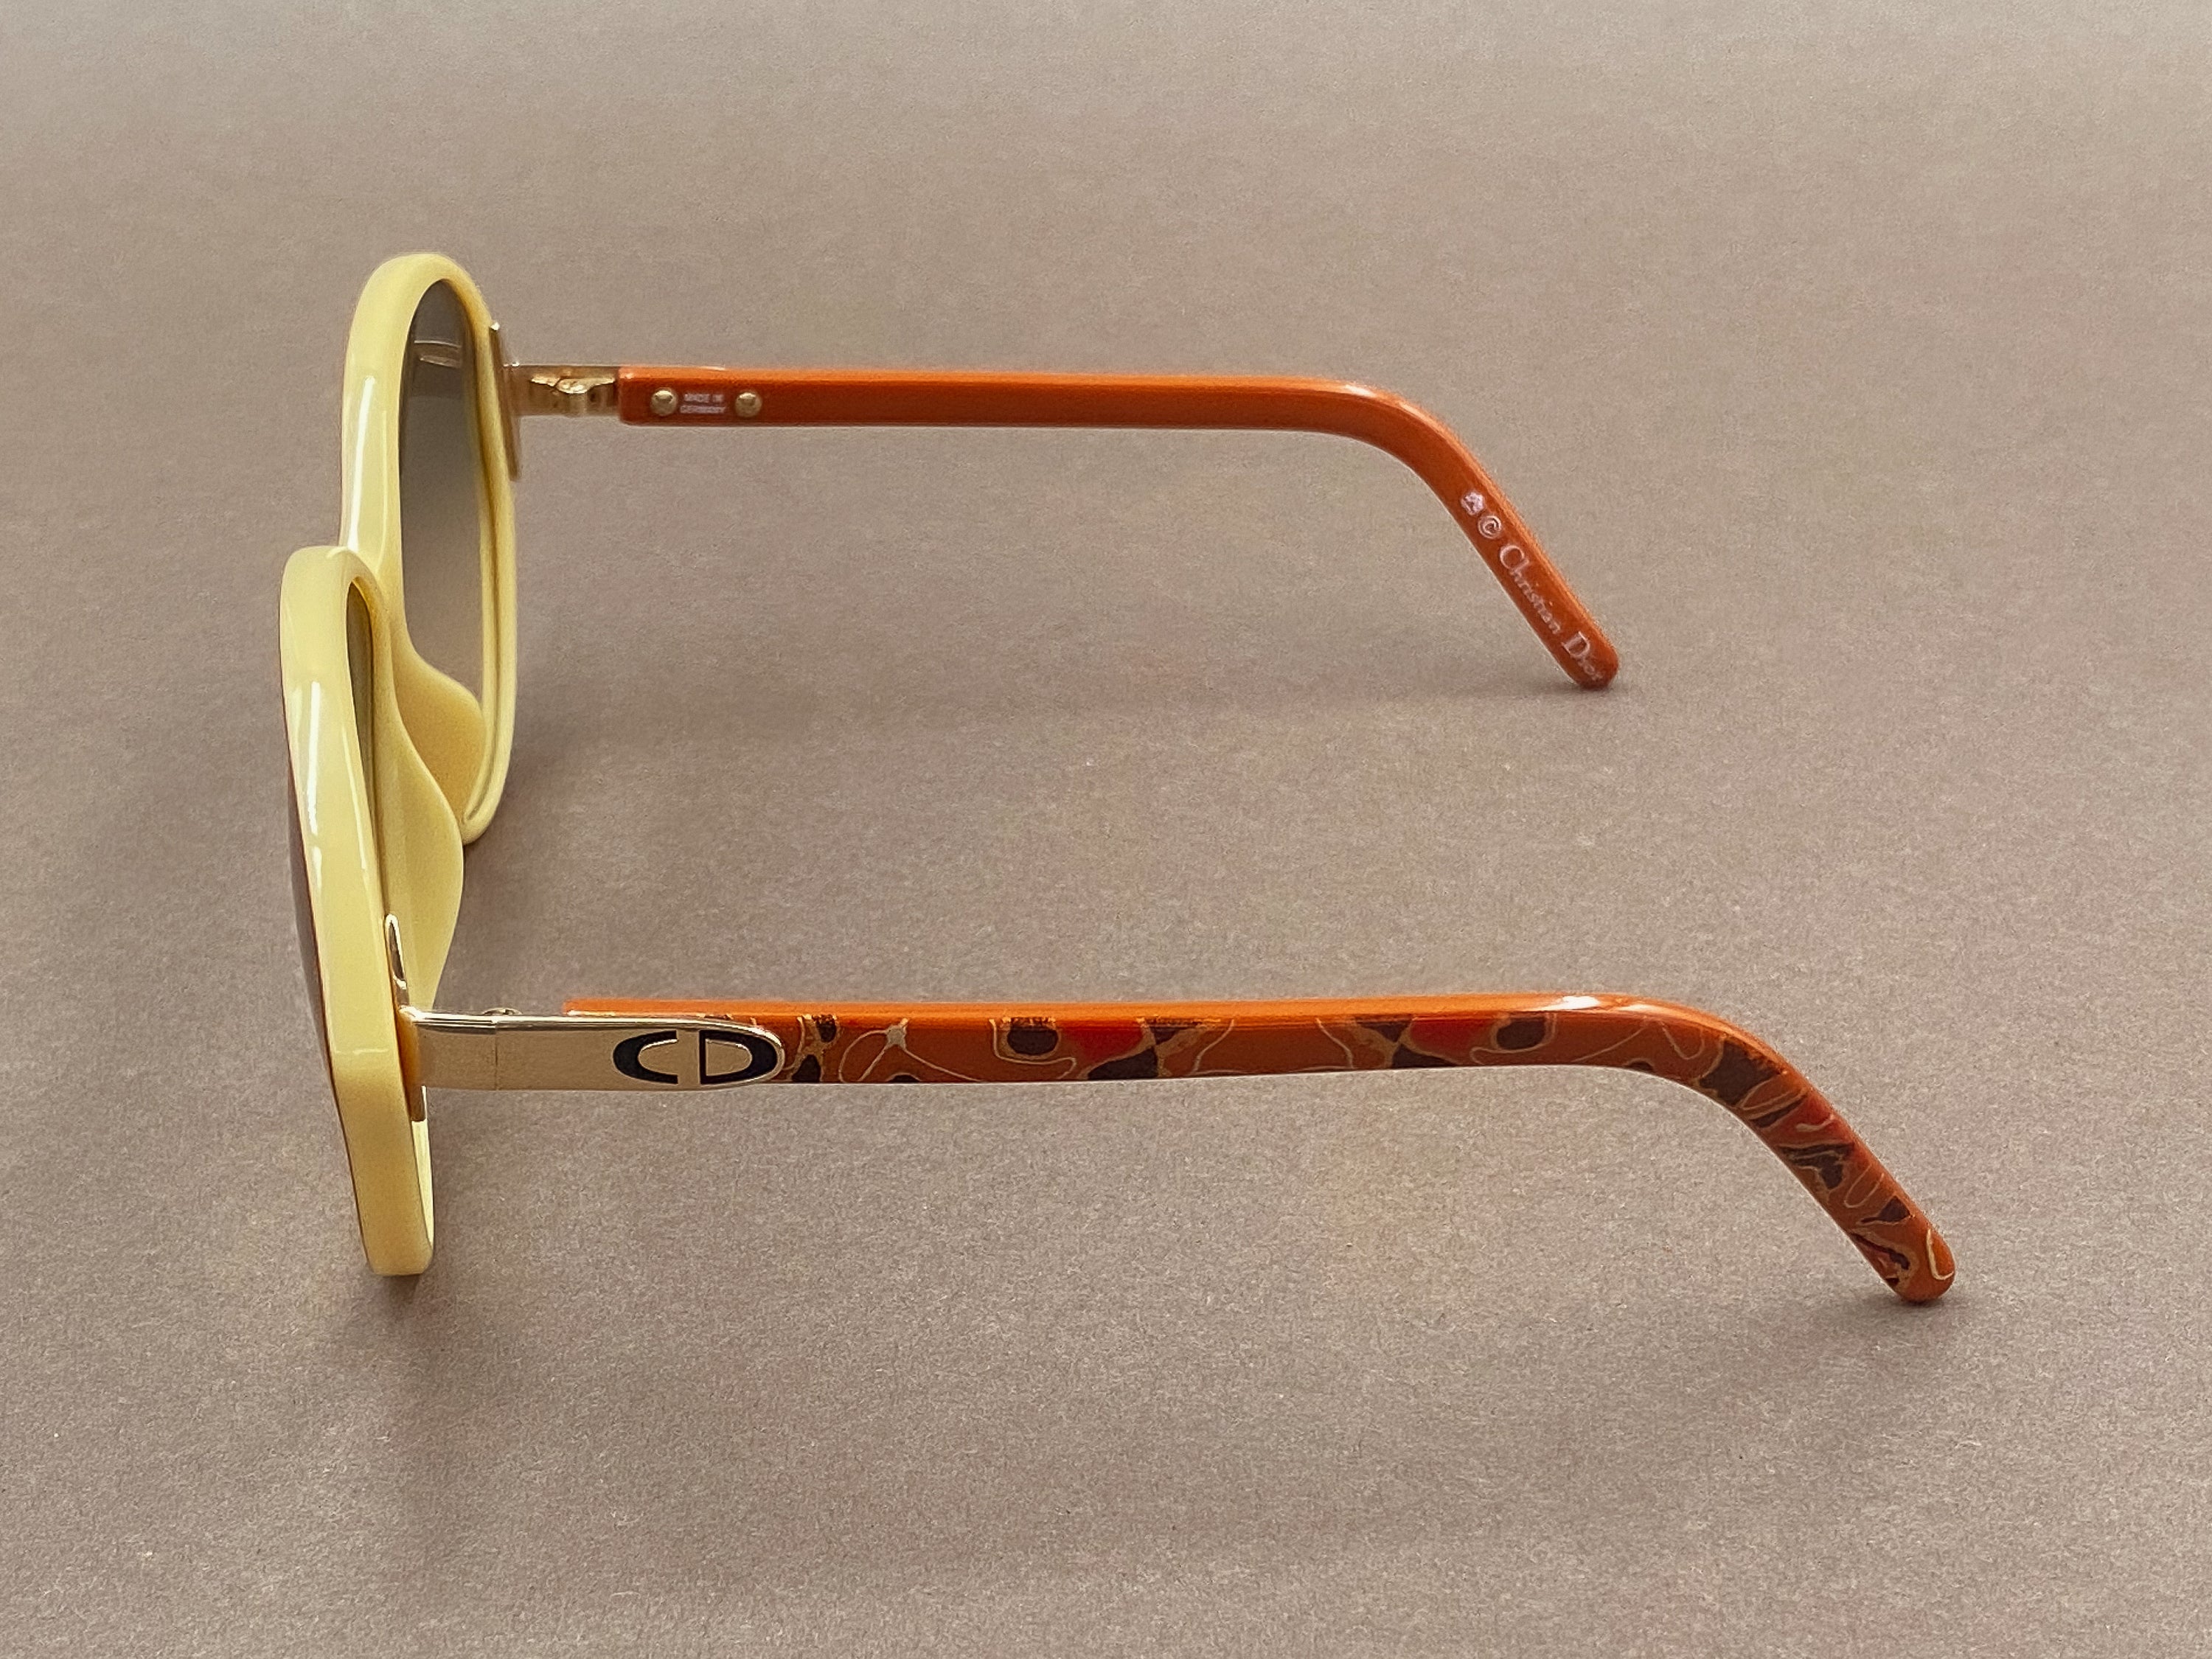 Christian Dior 2278 ladies sunglasses